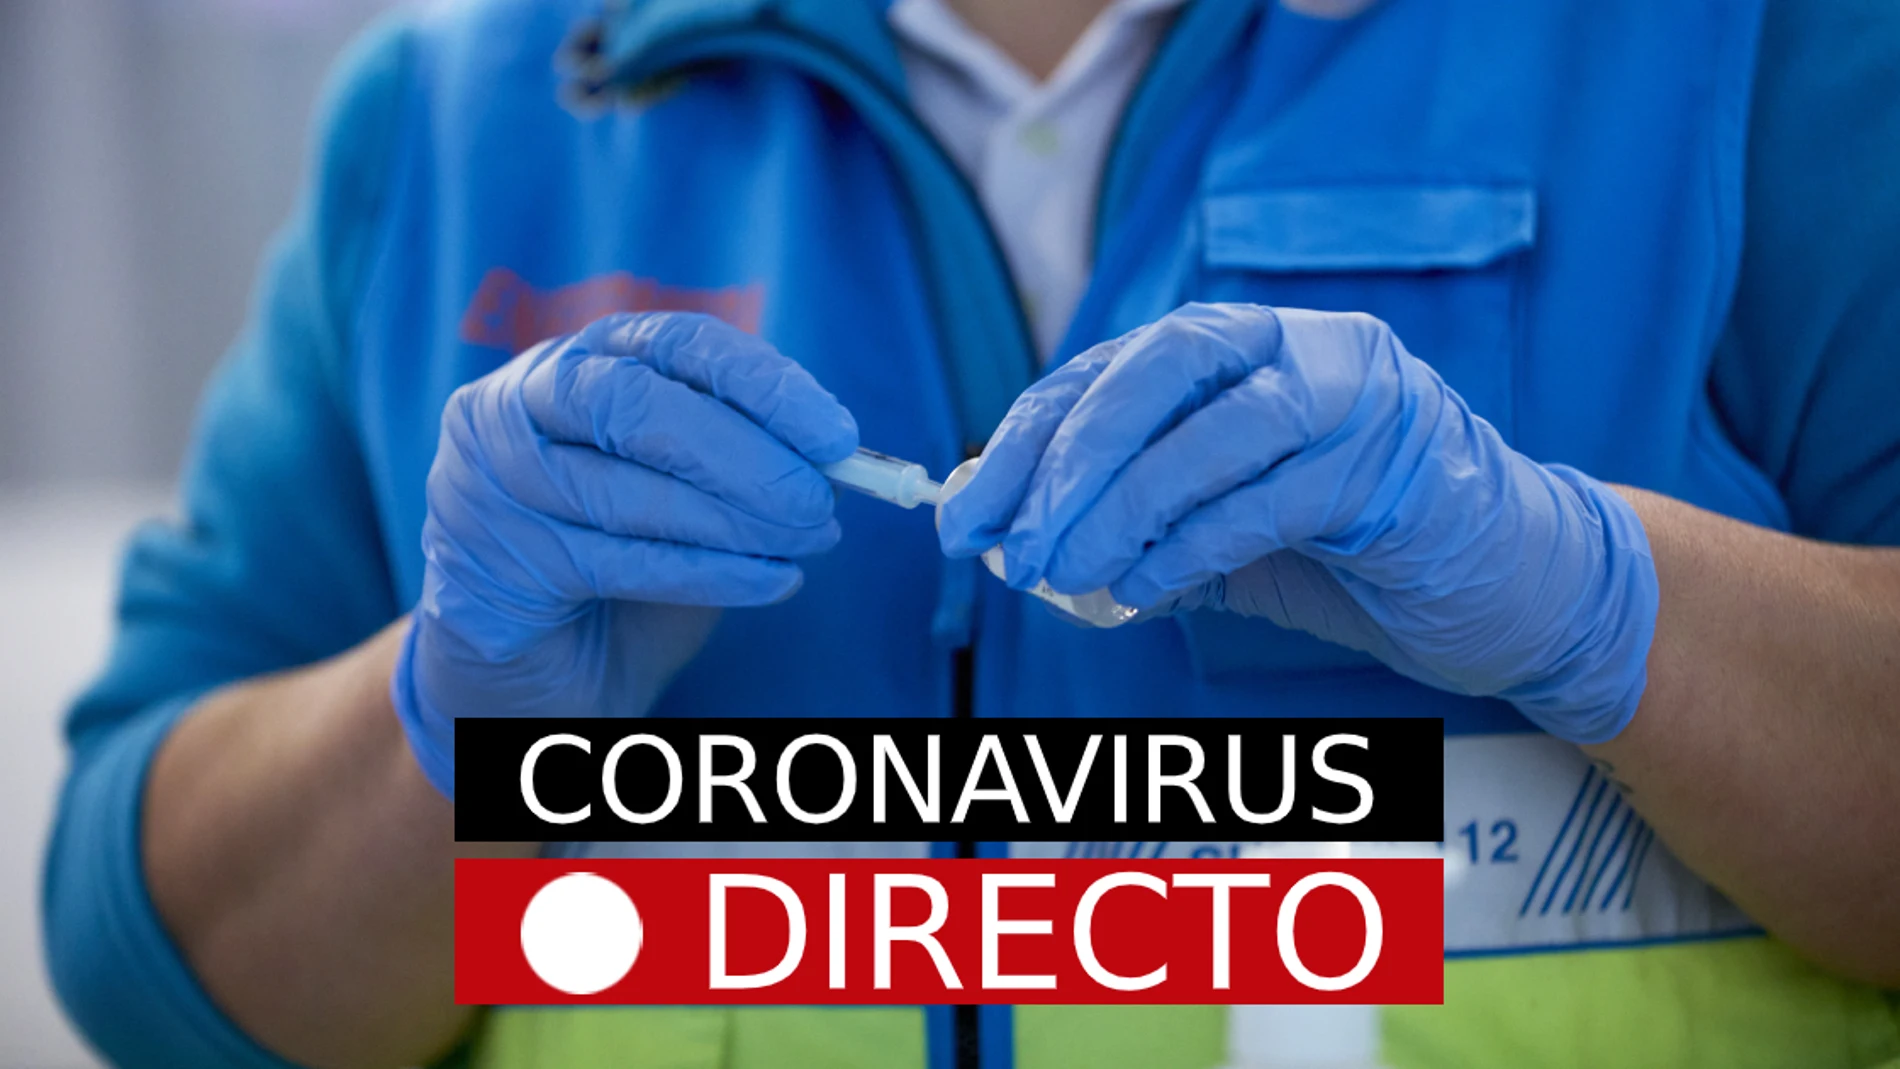 COVID-19 | Vacuna de coronavirus en España y Madrid, nuevas restricciones y medidas, en directo